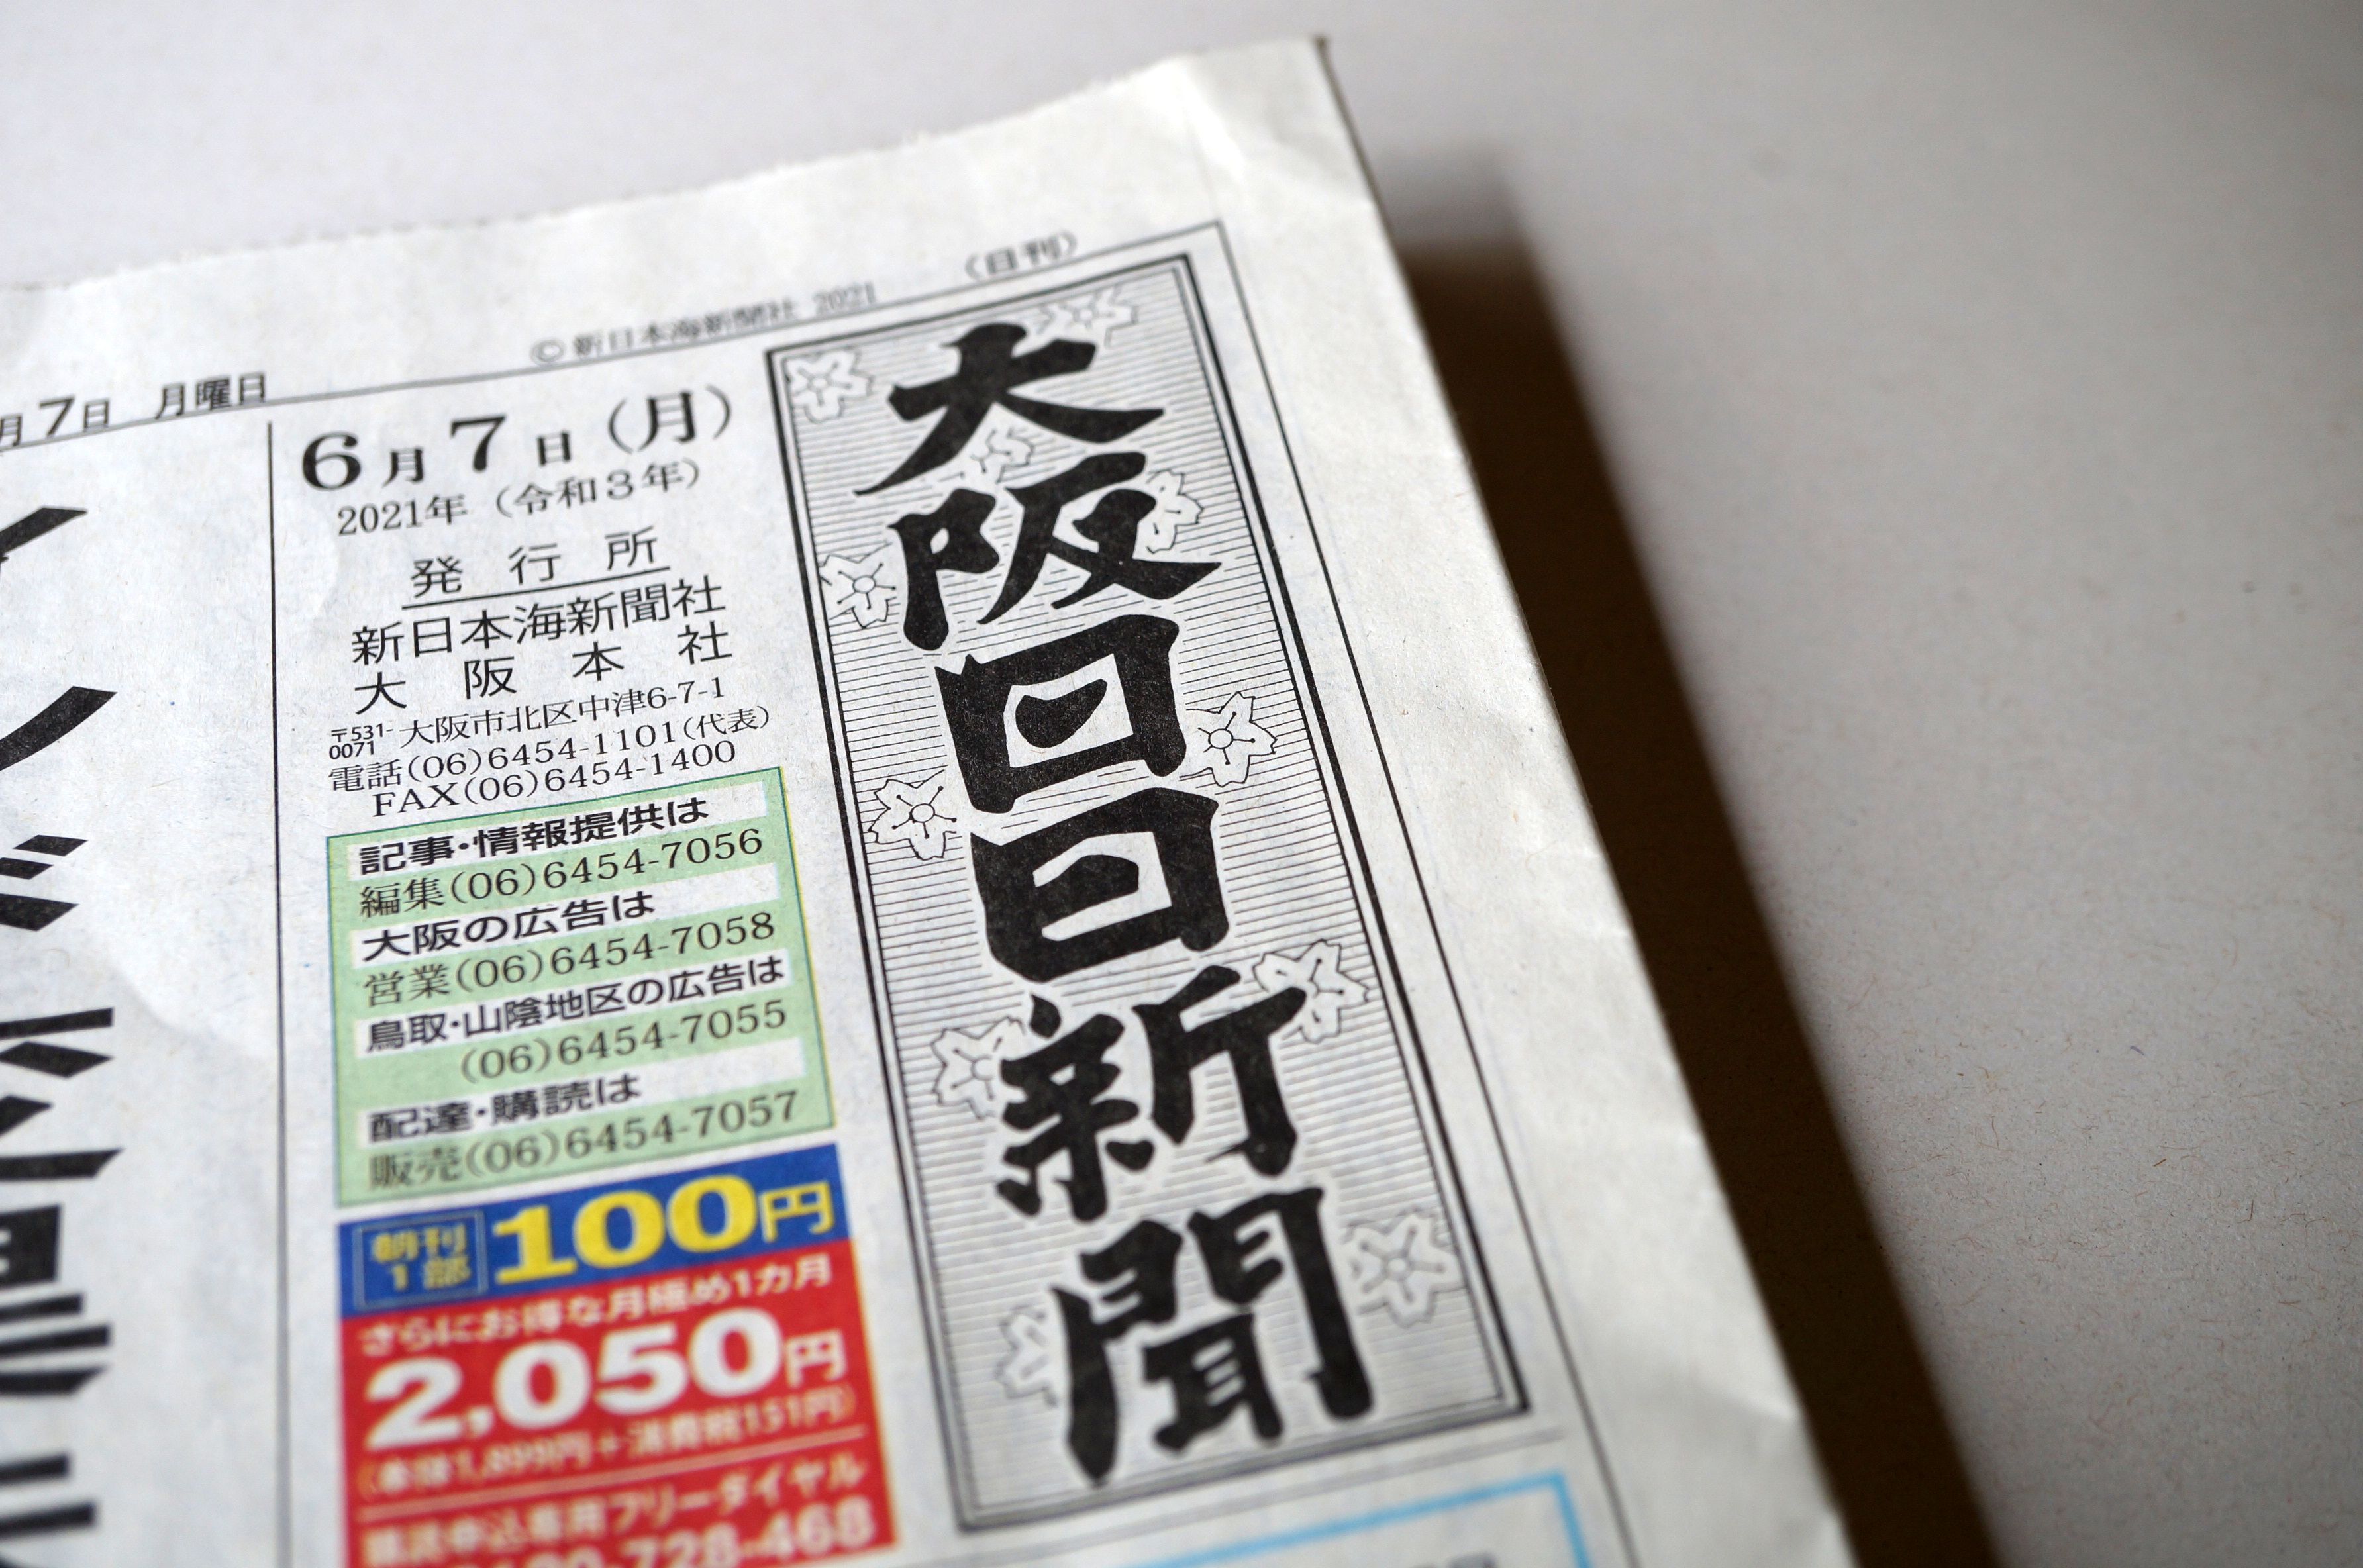 2021年6月7日付け大阪日日新聞の社会面に小野商店の貼り箱の新たな取り組み記事が掲載されました。